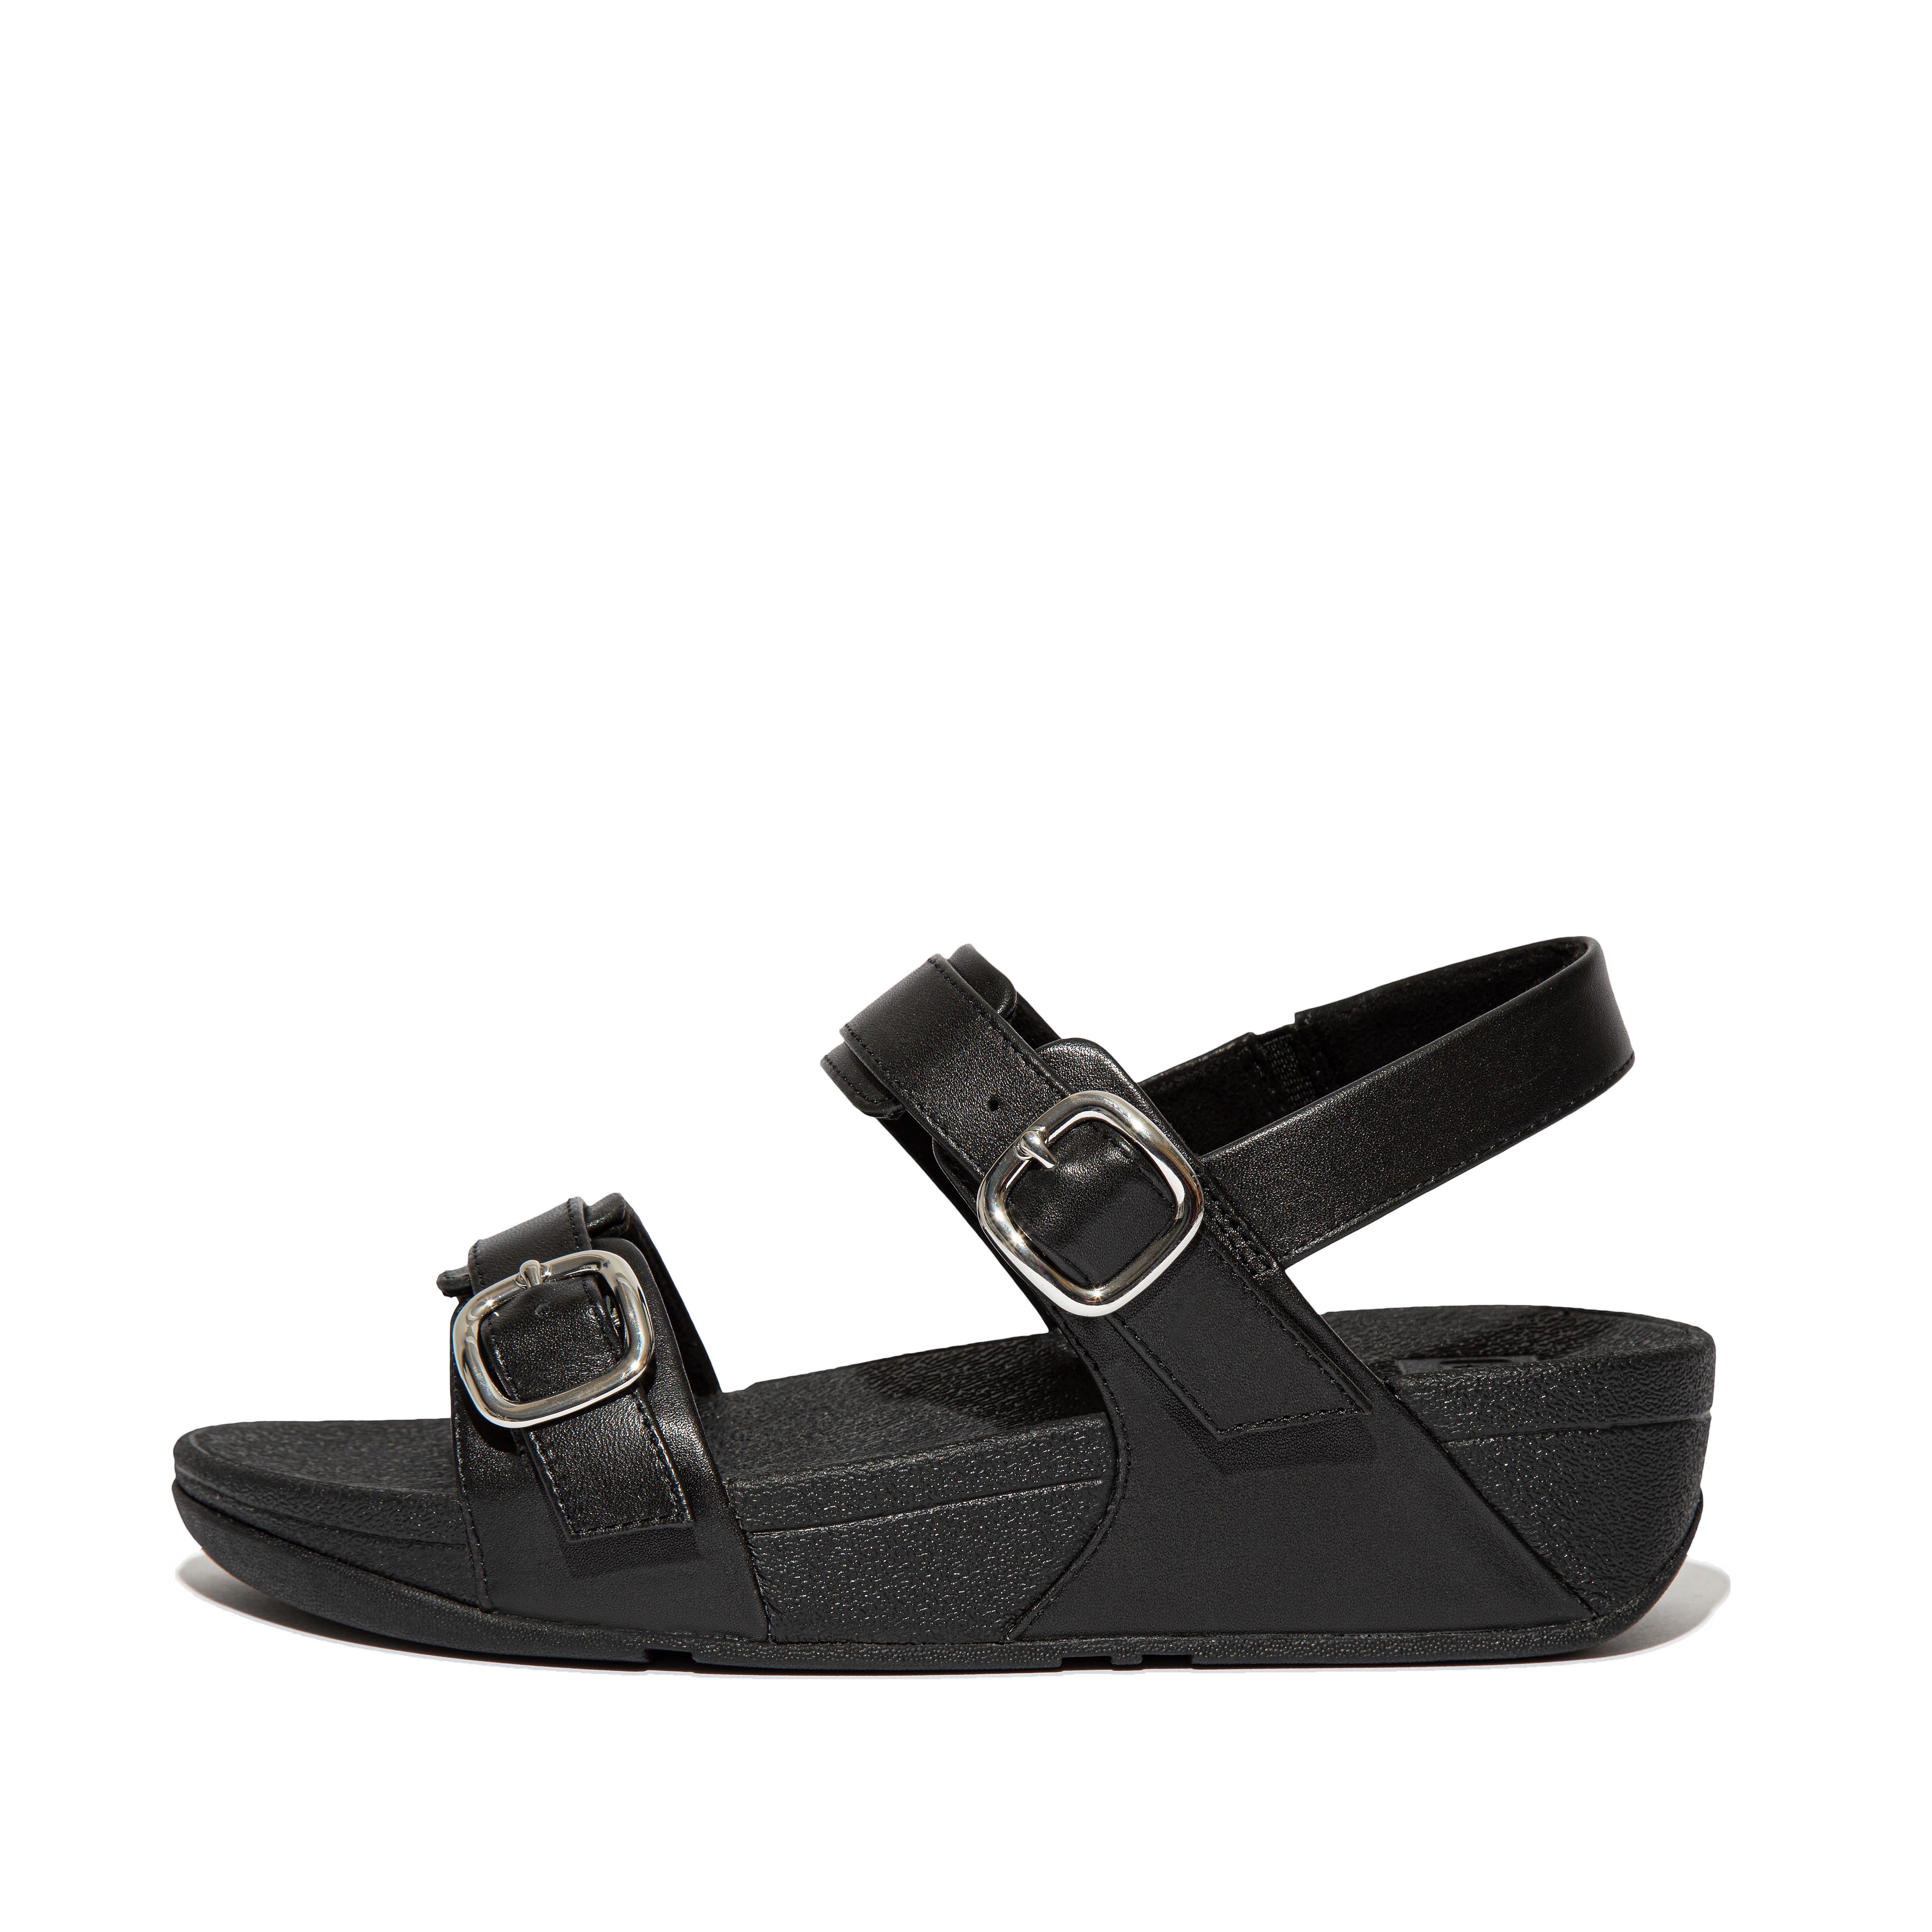 핏플랍 샌들 FitFlop LULU Adjustable Leather Sandals,All Black